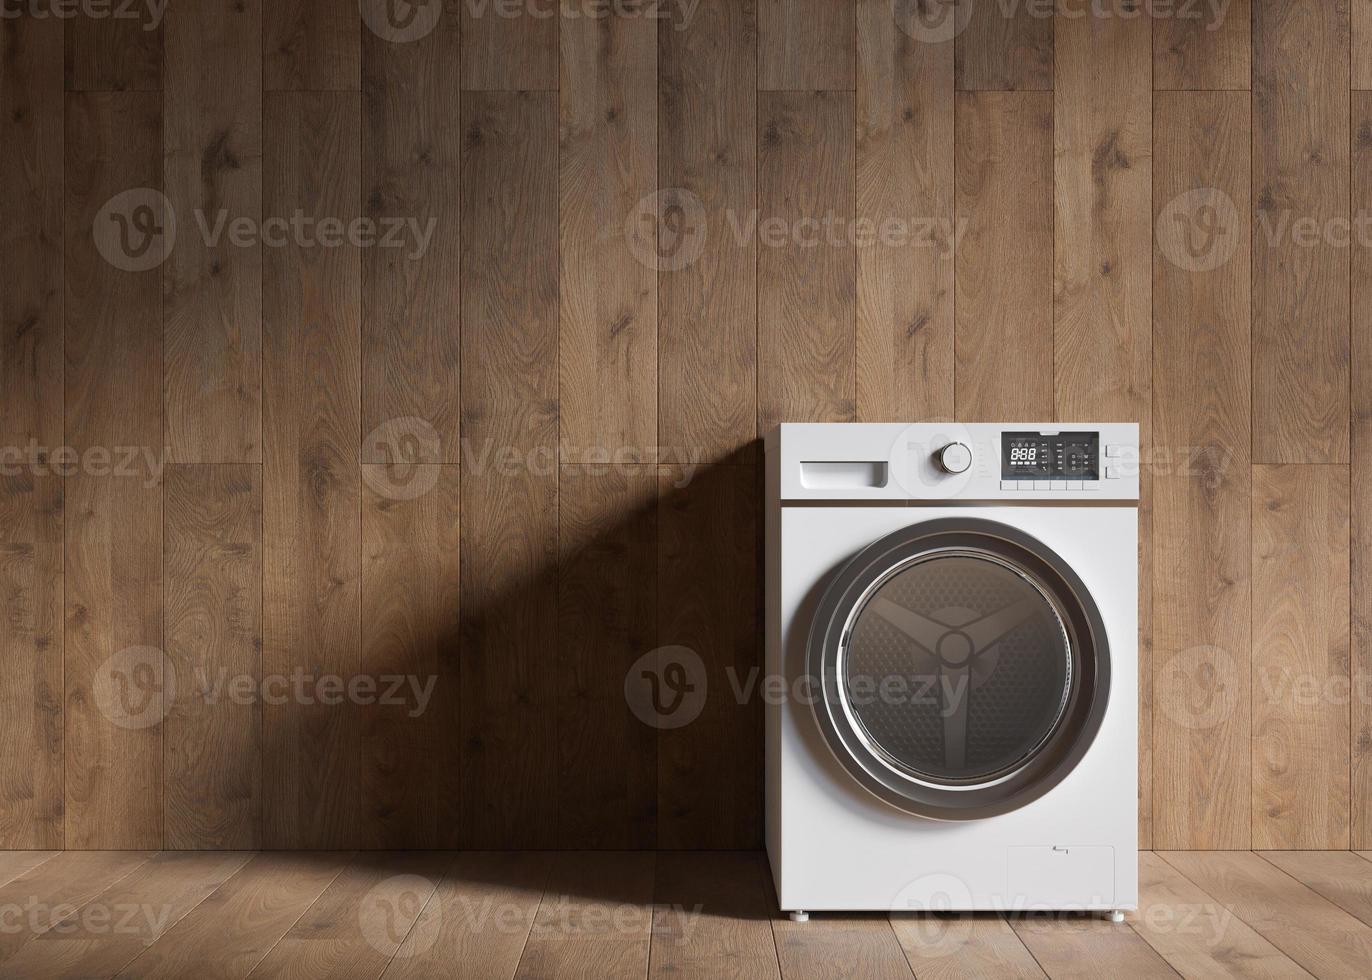 machine à laver debout dans une pièce vide. copiez l'espace pour le texte ou d'autres objets. équipement électrique domestique. appareil ménager moderne utilisé pour laver le linge. laveuse à chargement frontal. rendu 3d. photo